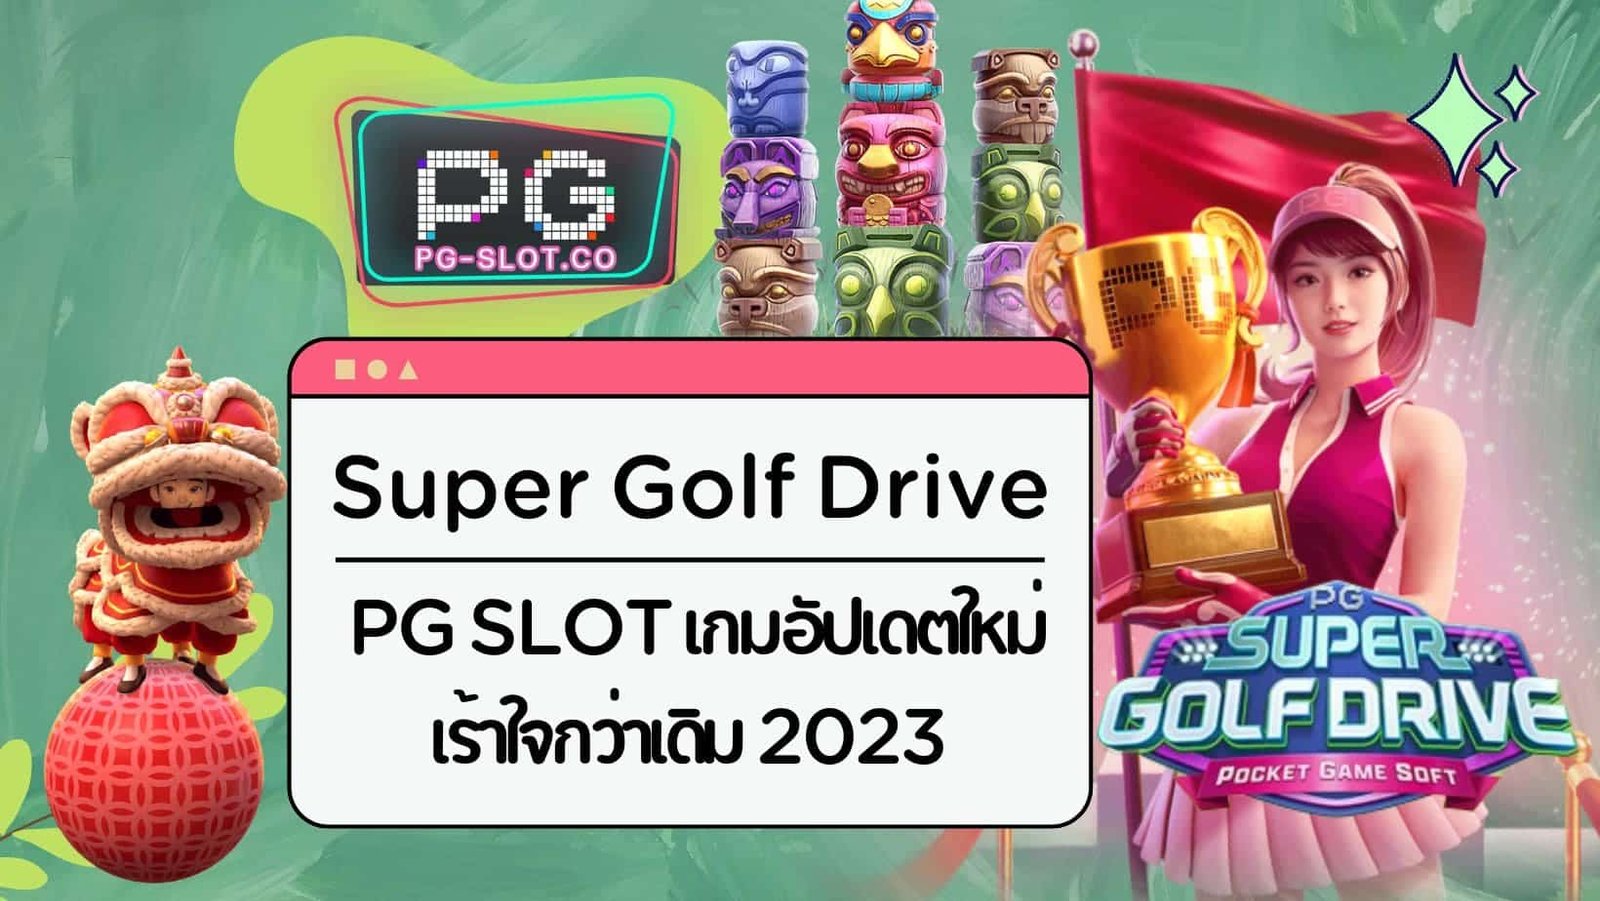 Super Golf Drive (1)